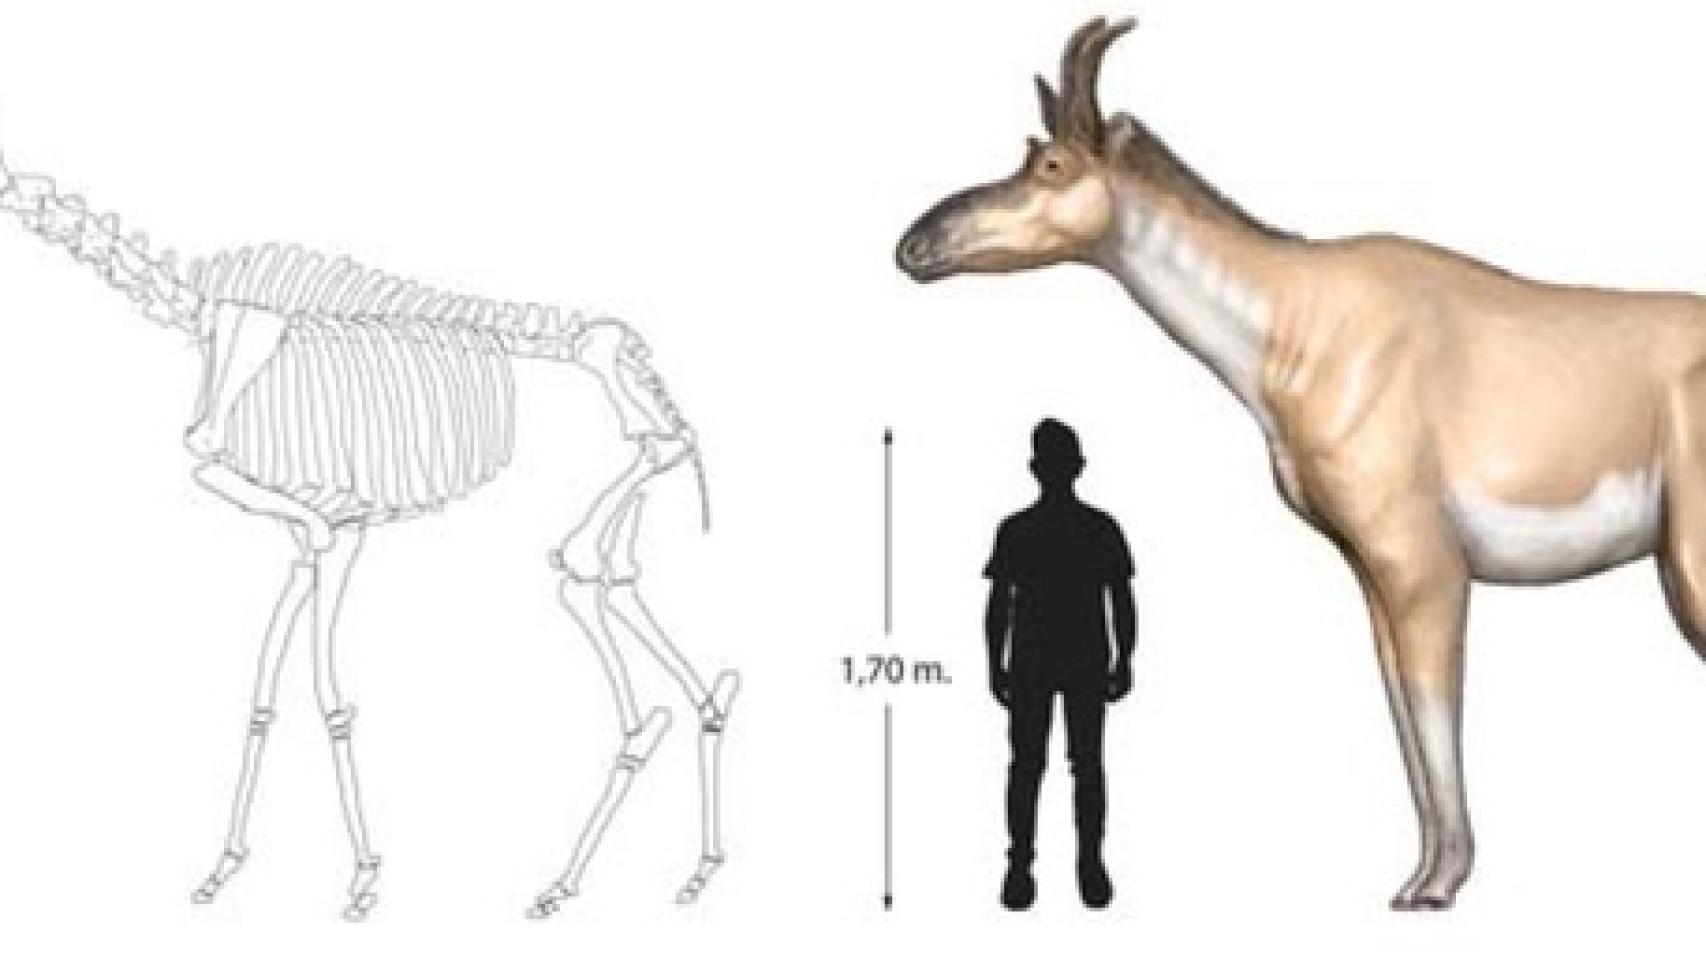 Relación de tamaño entre D. rex y humano